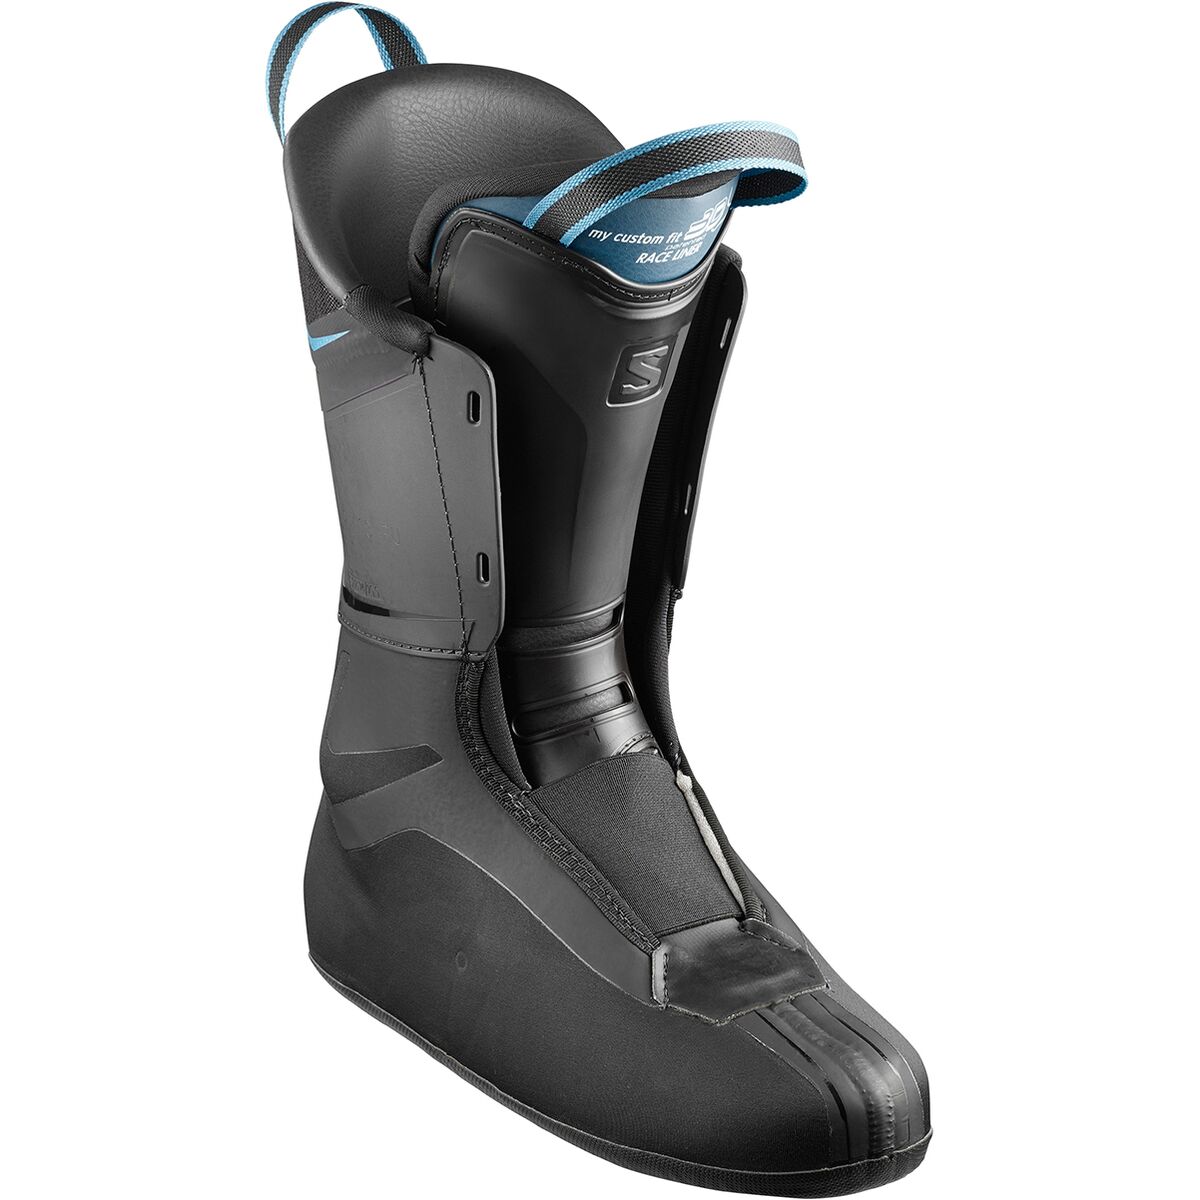 Salomon S/Max 120 Ski Boot - 2021 - Women's - Ski